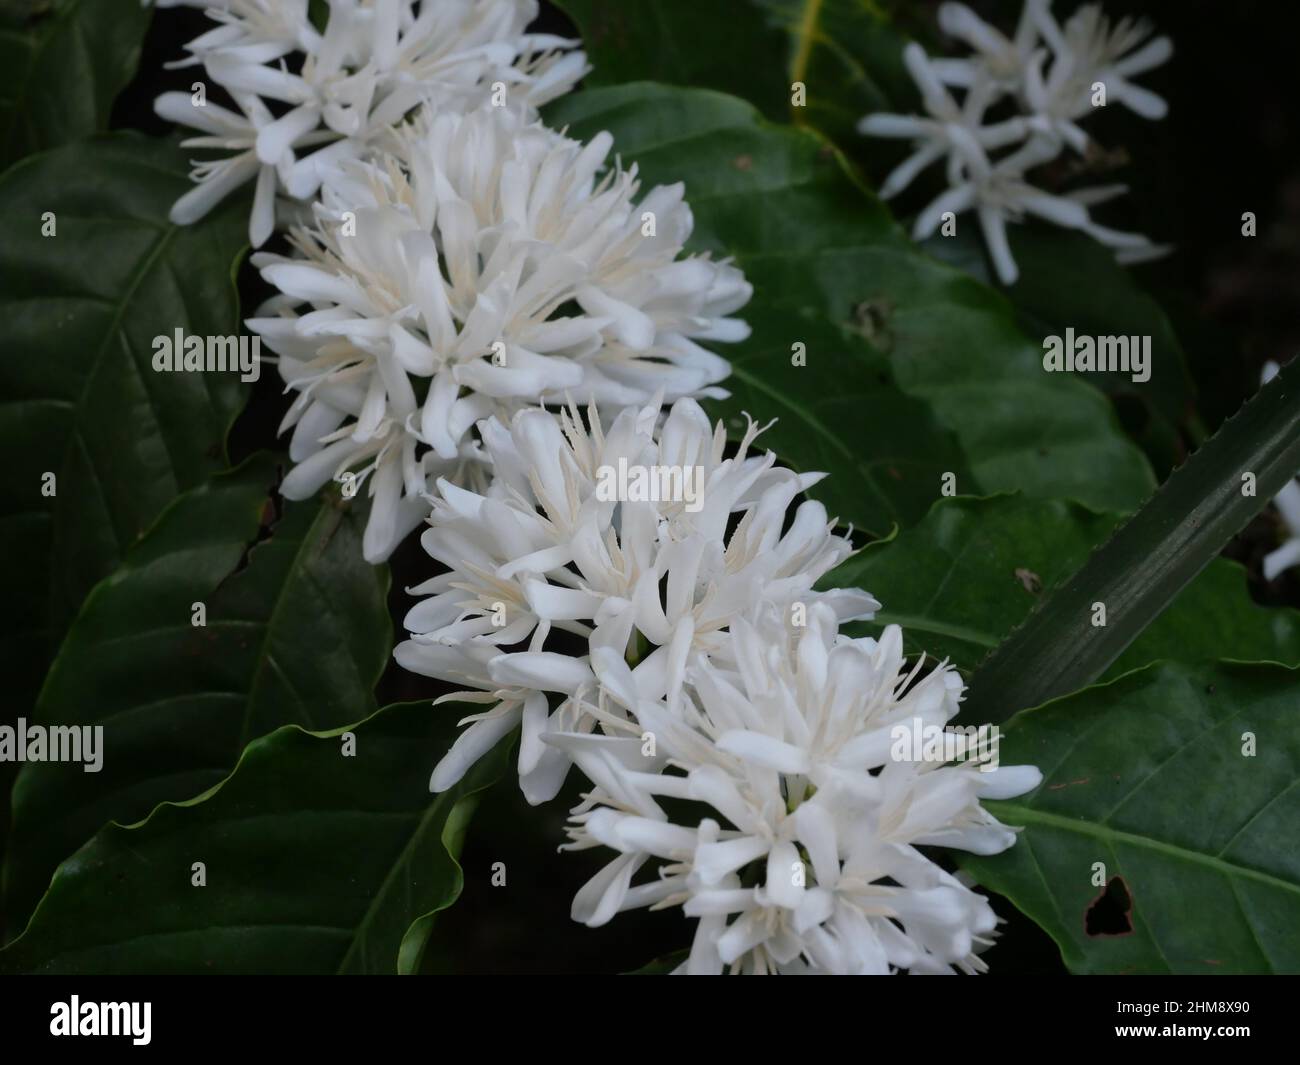 Robusta Kaffeeblüte auf Baumpflanze mit grünem Blatt mit schwarzer Farbe im Hintergrund. Blütenblätter und weiße Staubgefäße von blühenden Blumen Stockfoto